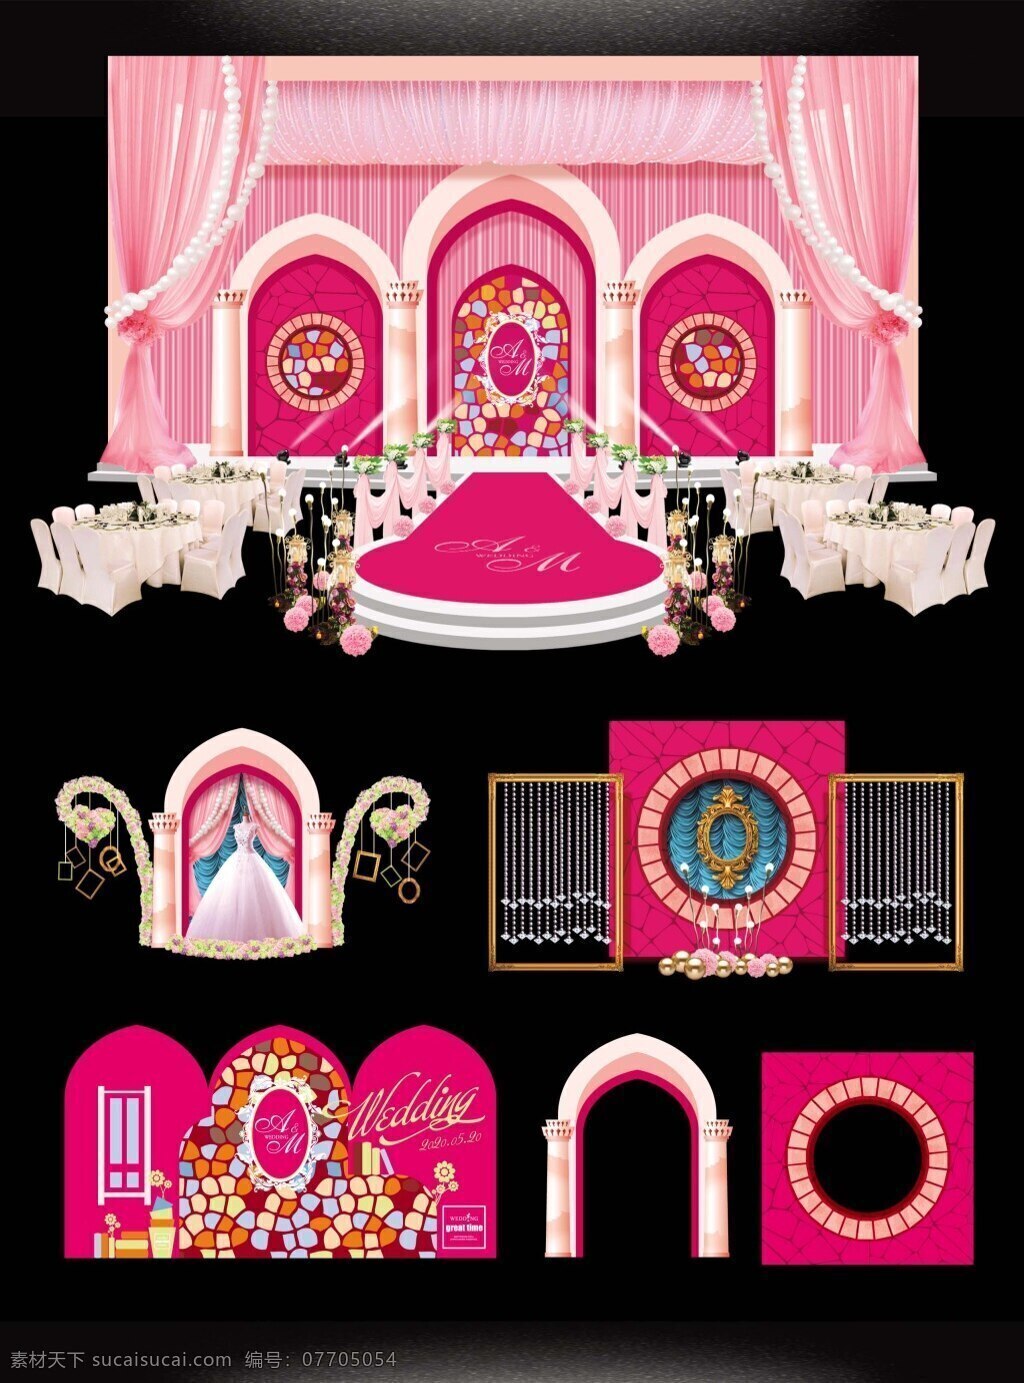 欧式 教堂 主题 婚礼 婚礼布置 粉色舞台 签到区 效果图 迎宾区 黑色